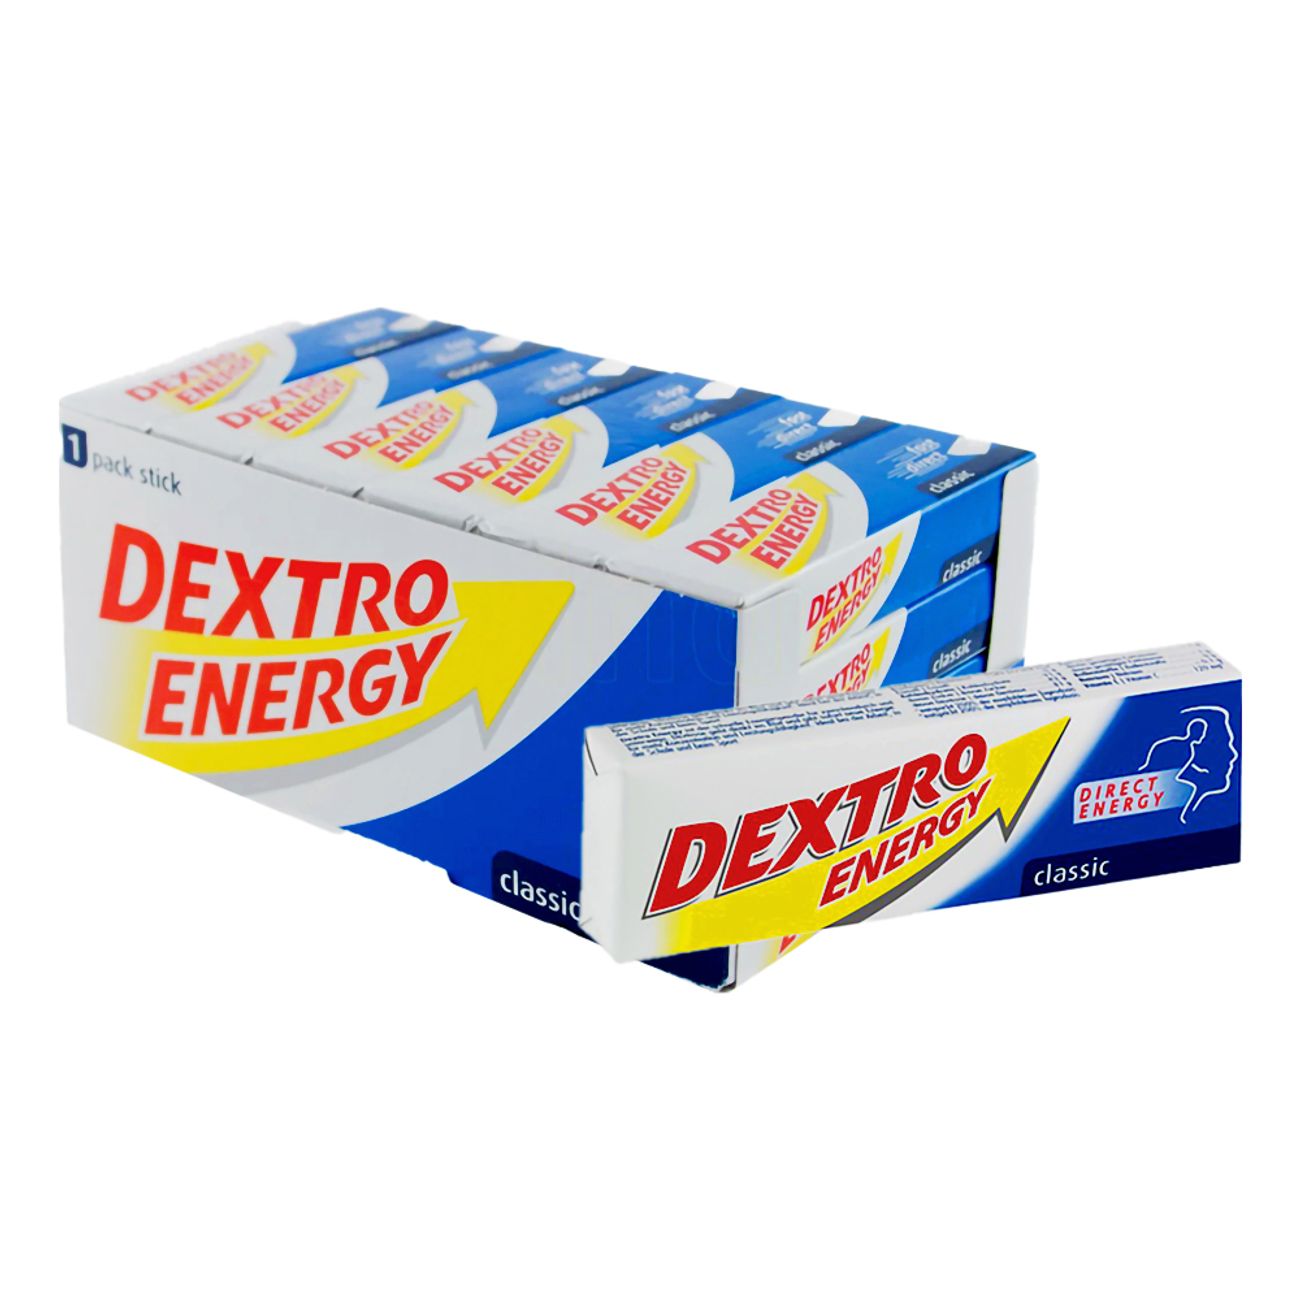 dextro-energy-classic-16197-3